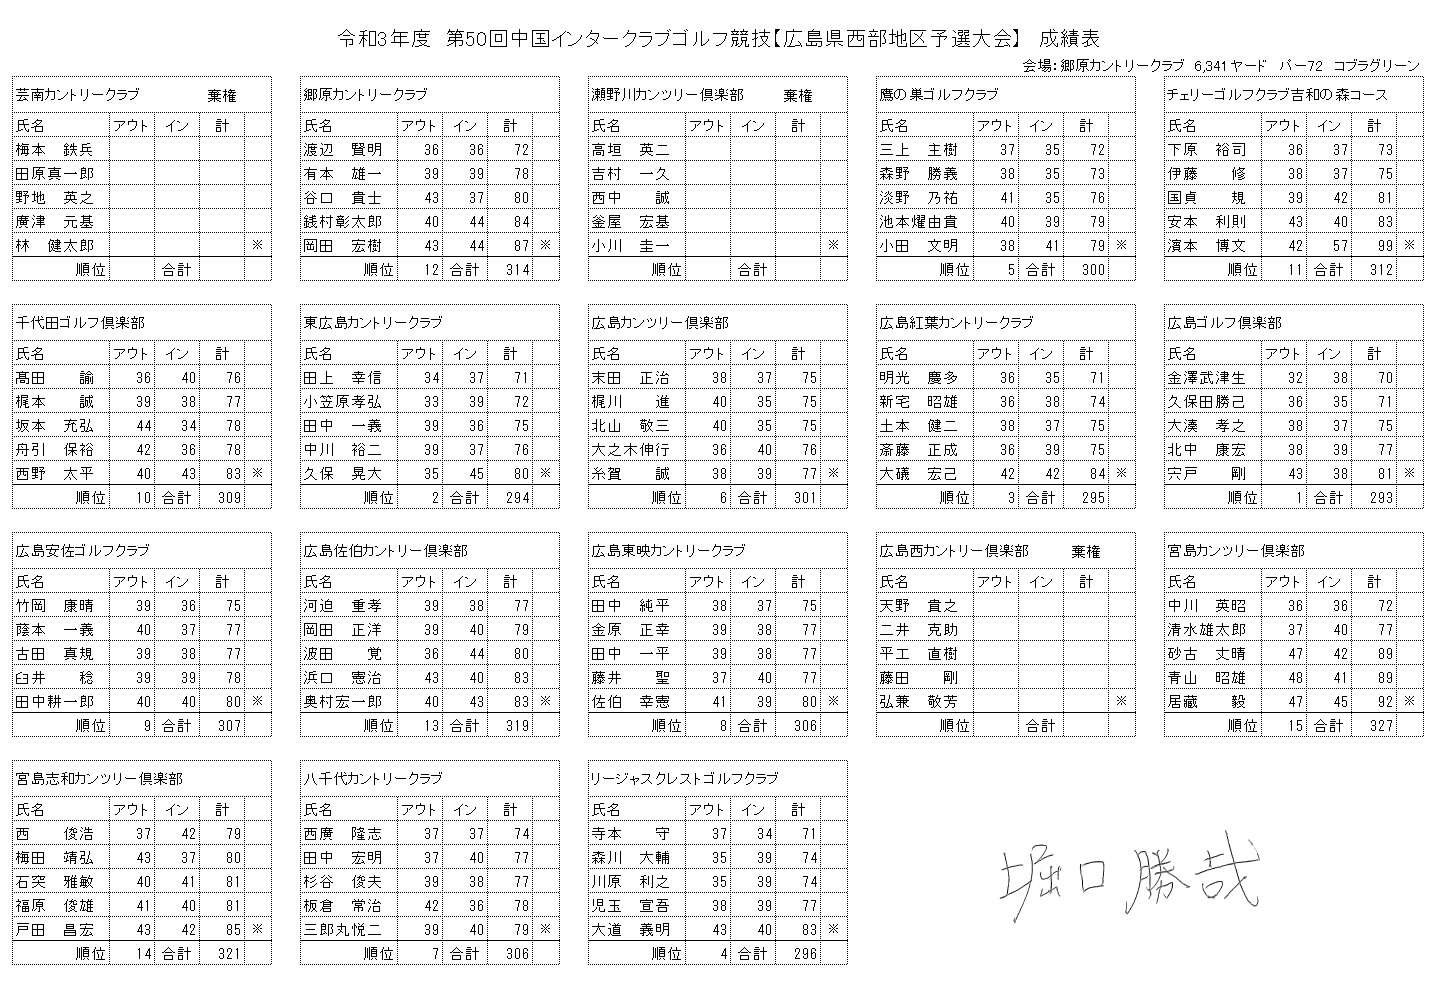 第50回中国インタークラブゴルフ競技 広島県西部地区予選大会 イベント情報や成績表のお知らせをご確認いただけます 広島 でゴルフ場を運営する郷原ゴルフ観光株式会社